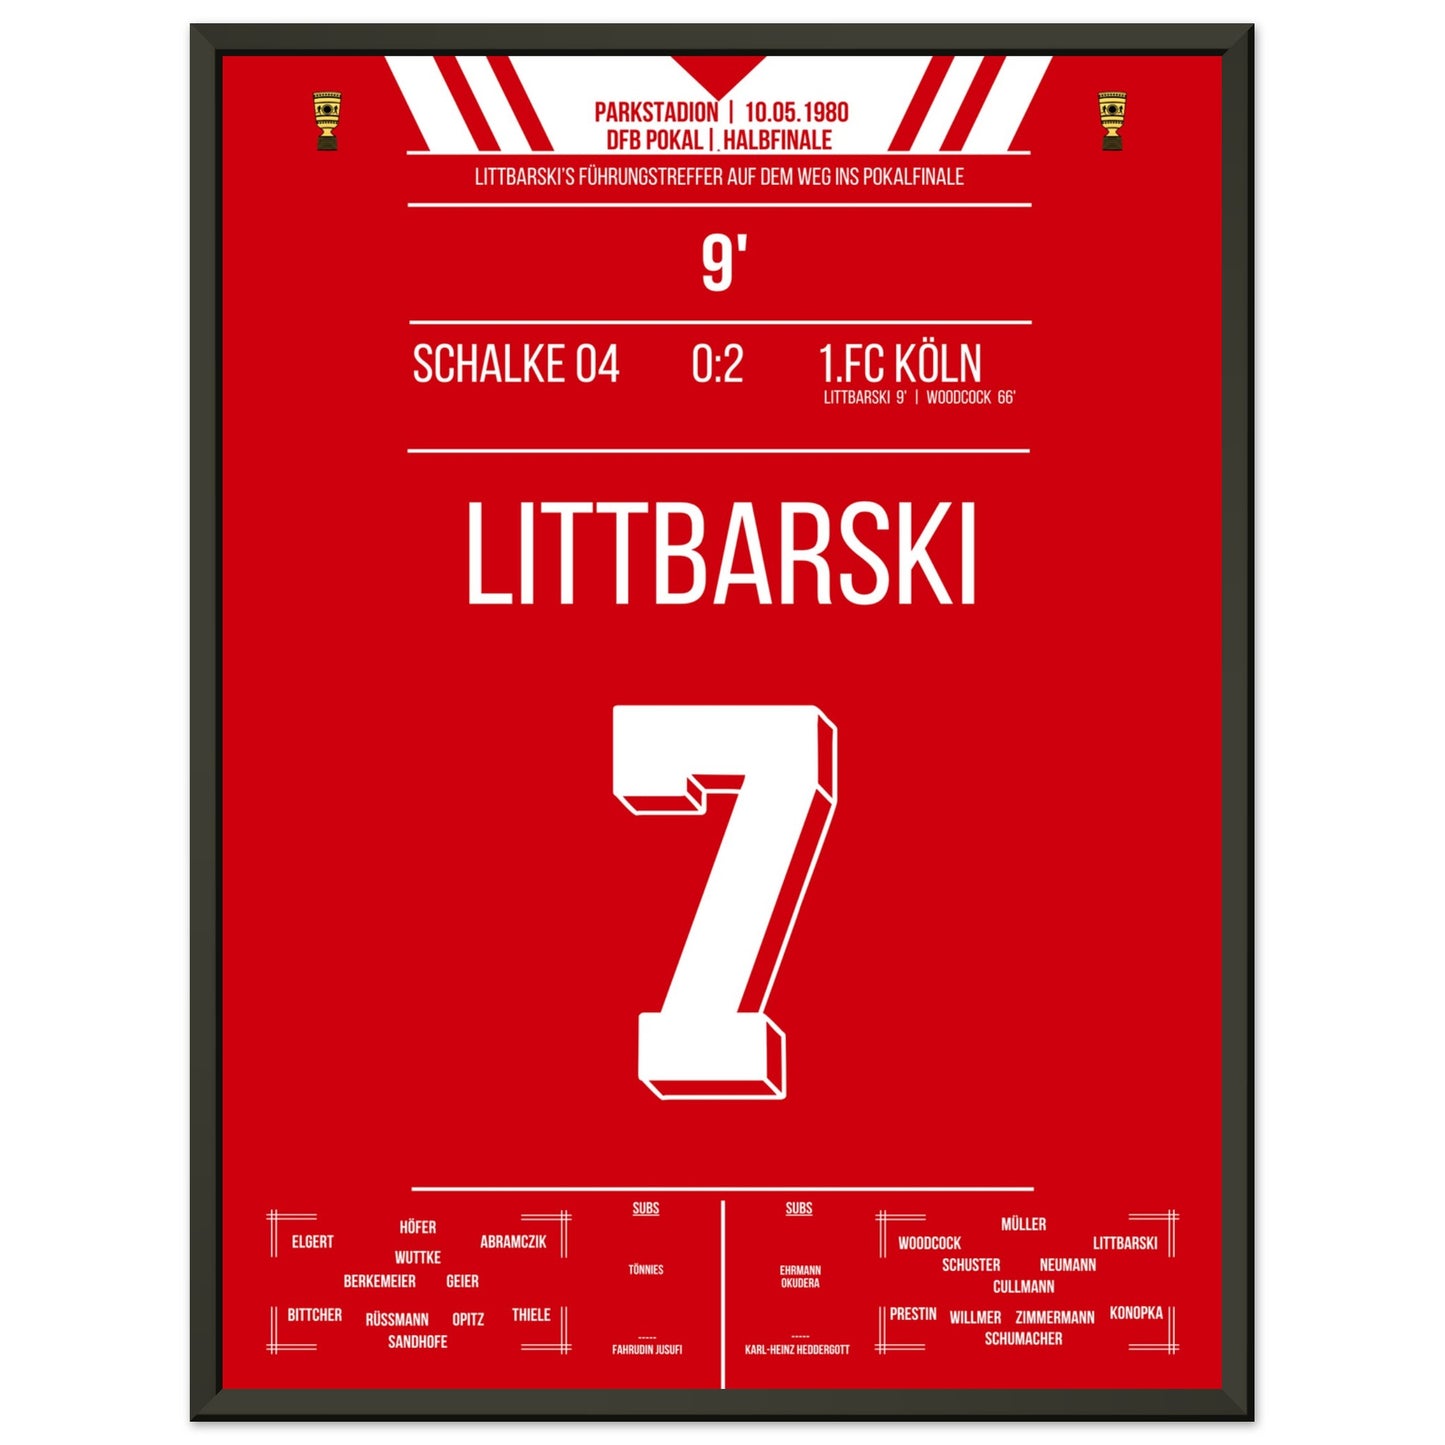 Littbarski's Führungstreffer im Pokalhalbfinale gegen Schalke 1980